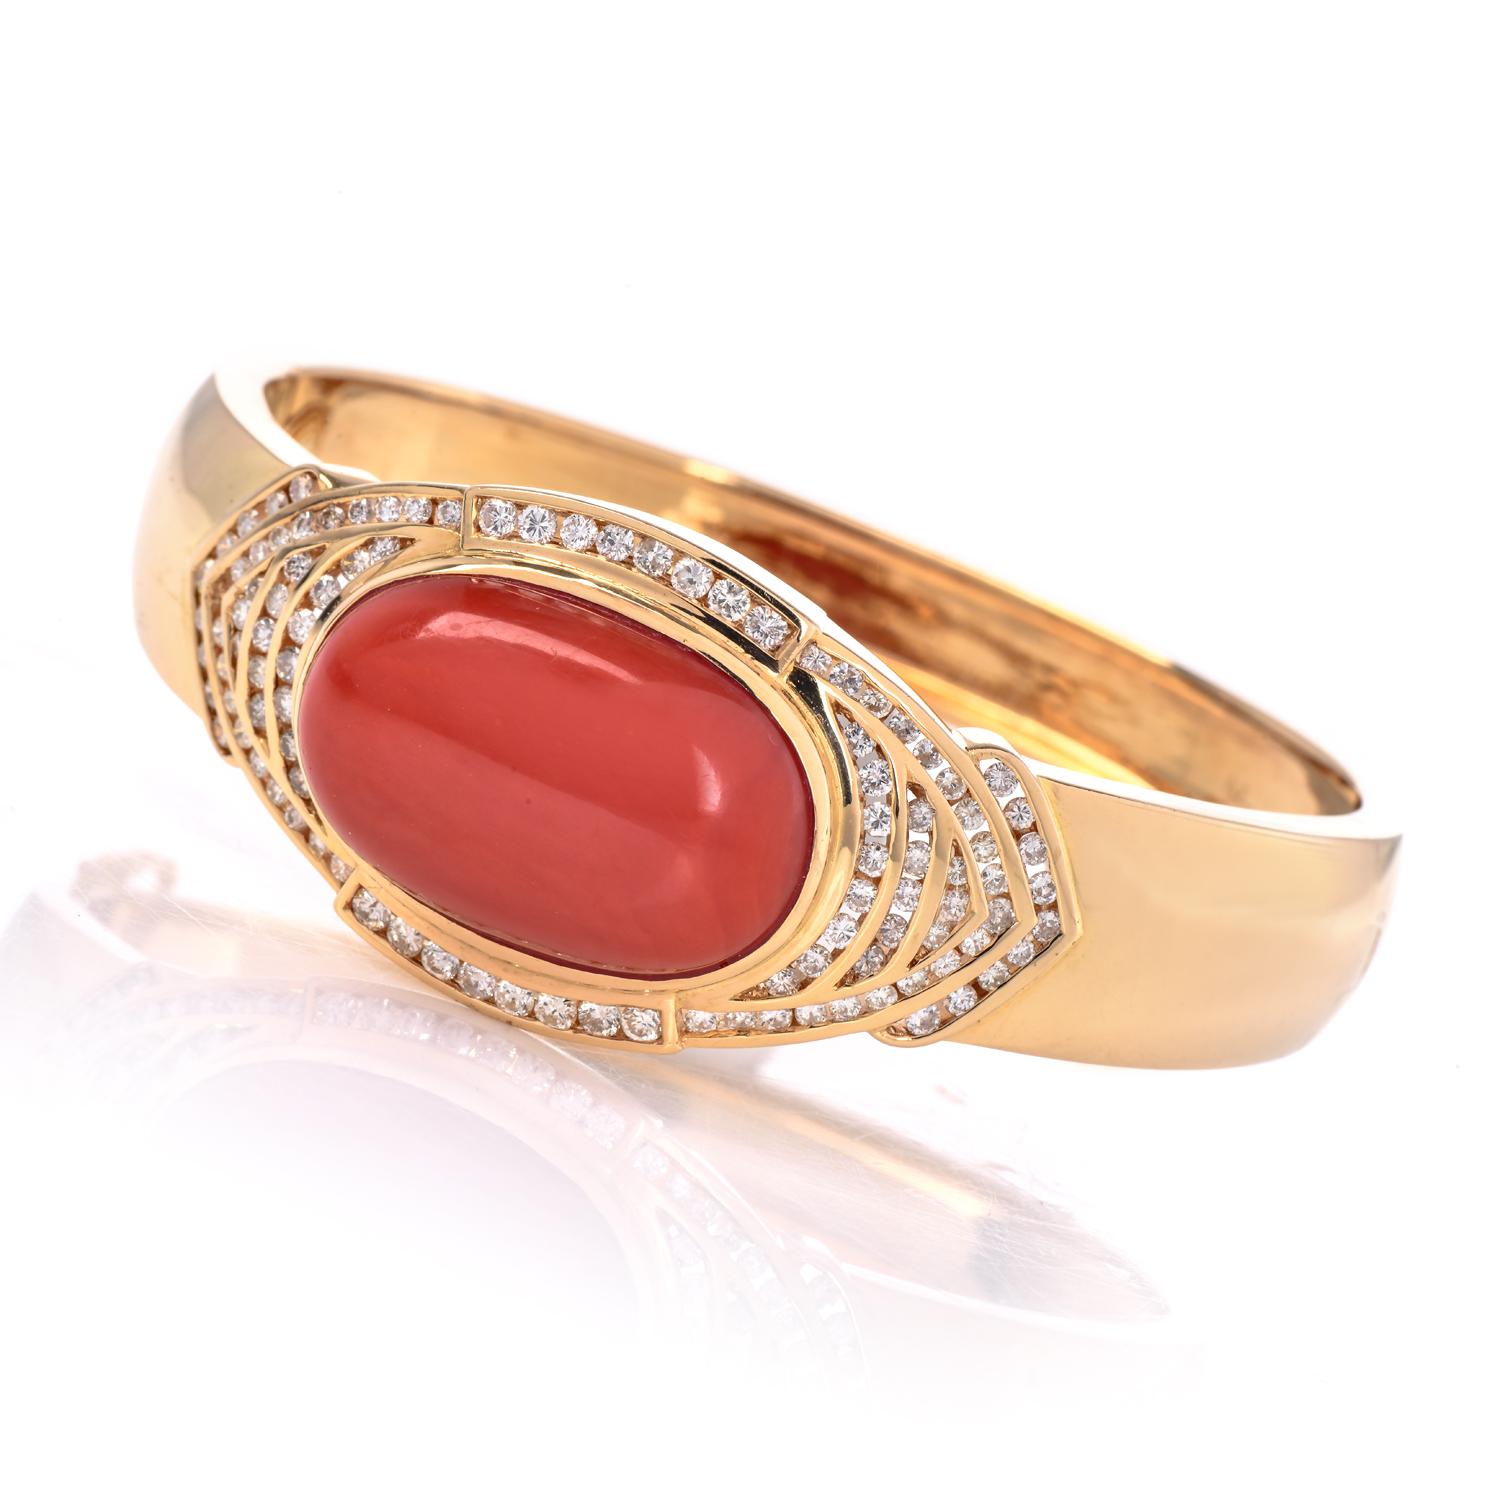 Bracelet manchette en or jaune 18 carats avec corail rouge naturel certifié par le GIA et diamants. Le corail est un double cabochon ovale de couleur rouge-orange semi-translucide, sans indication de teinture, serti au centre.

Les diamants sont des